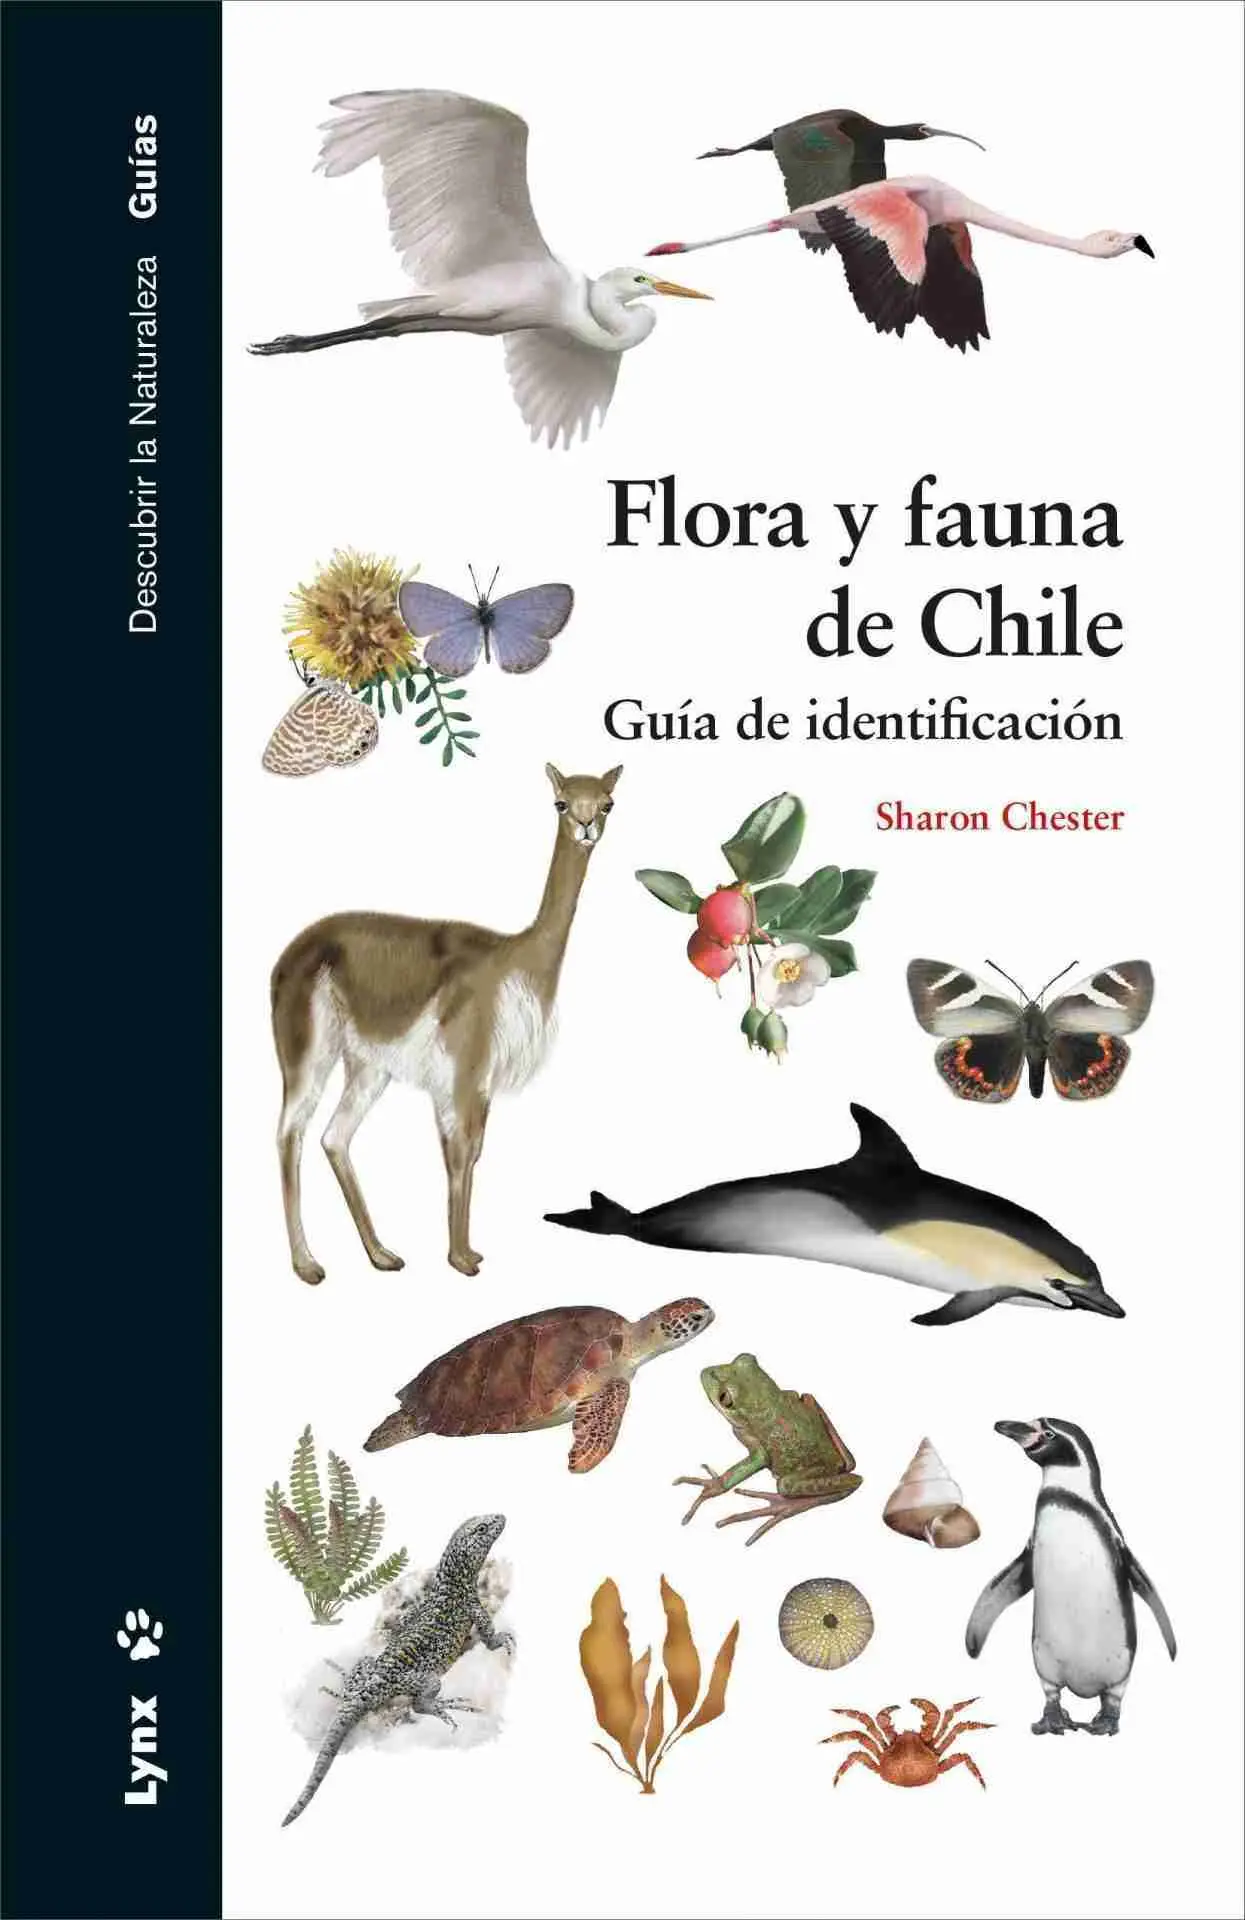 flora y fauna de chile resumen - Qué flora y fauna hay en Chile